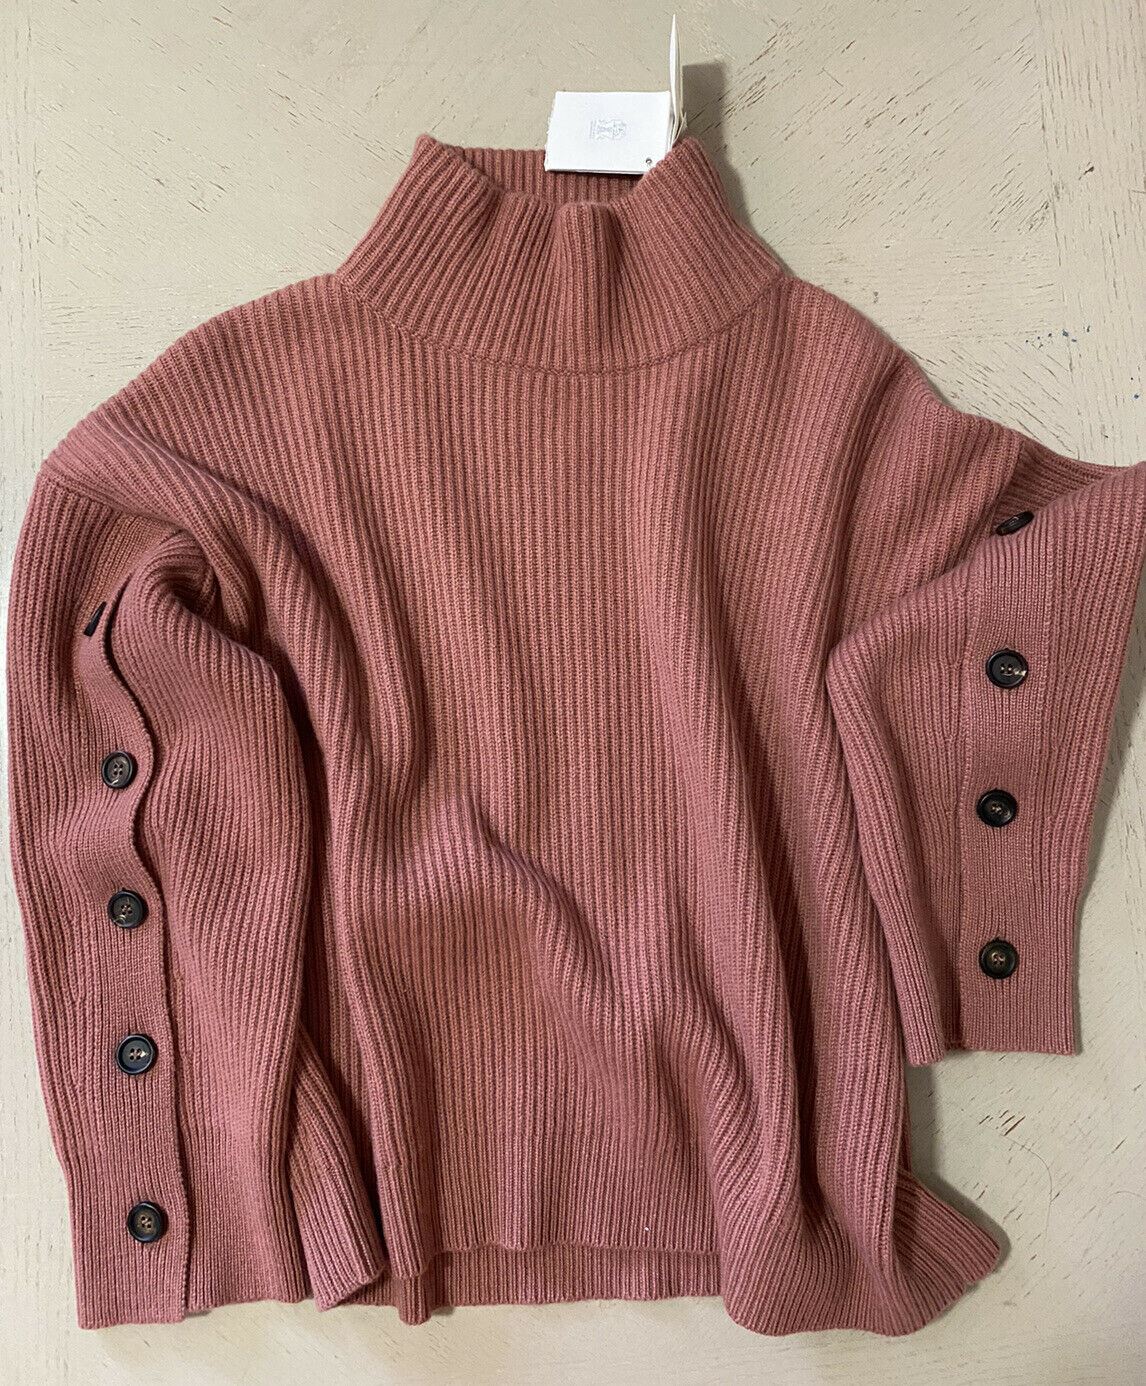 Новый кашемировый свитер Brunello Cucinelli с пуговицами и рукавами за 3795 долларов США, размер S лососевого цвета